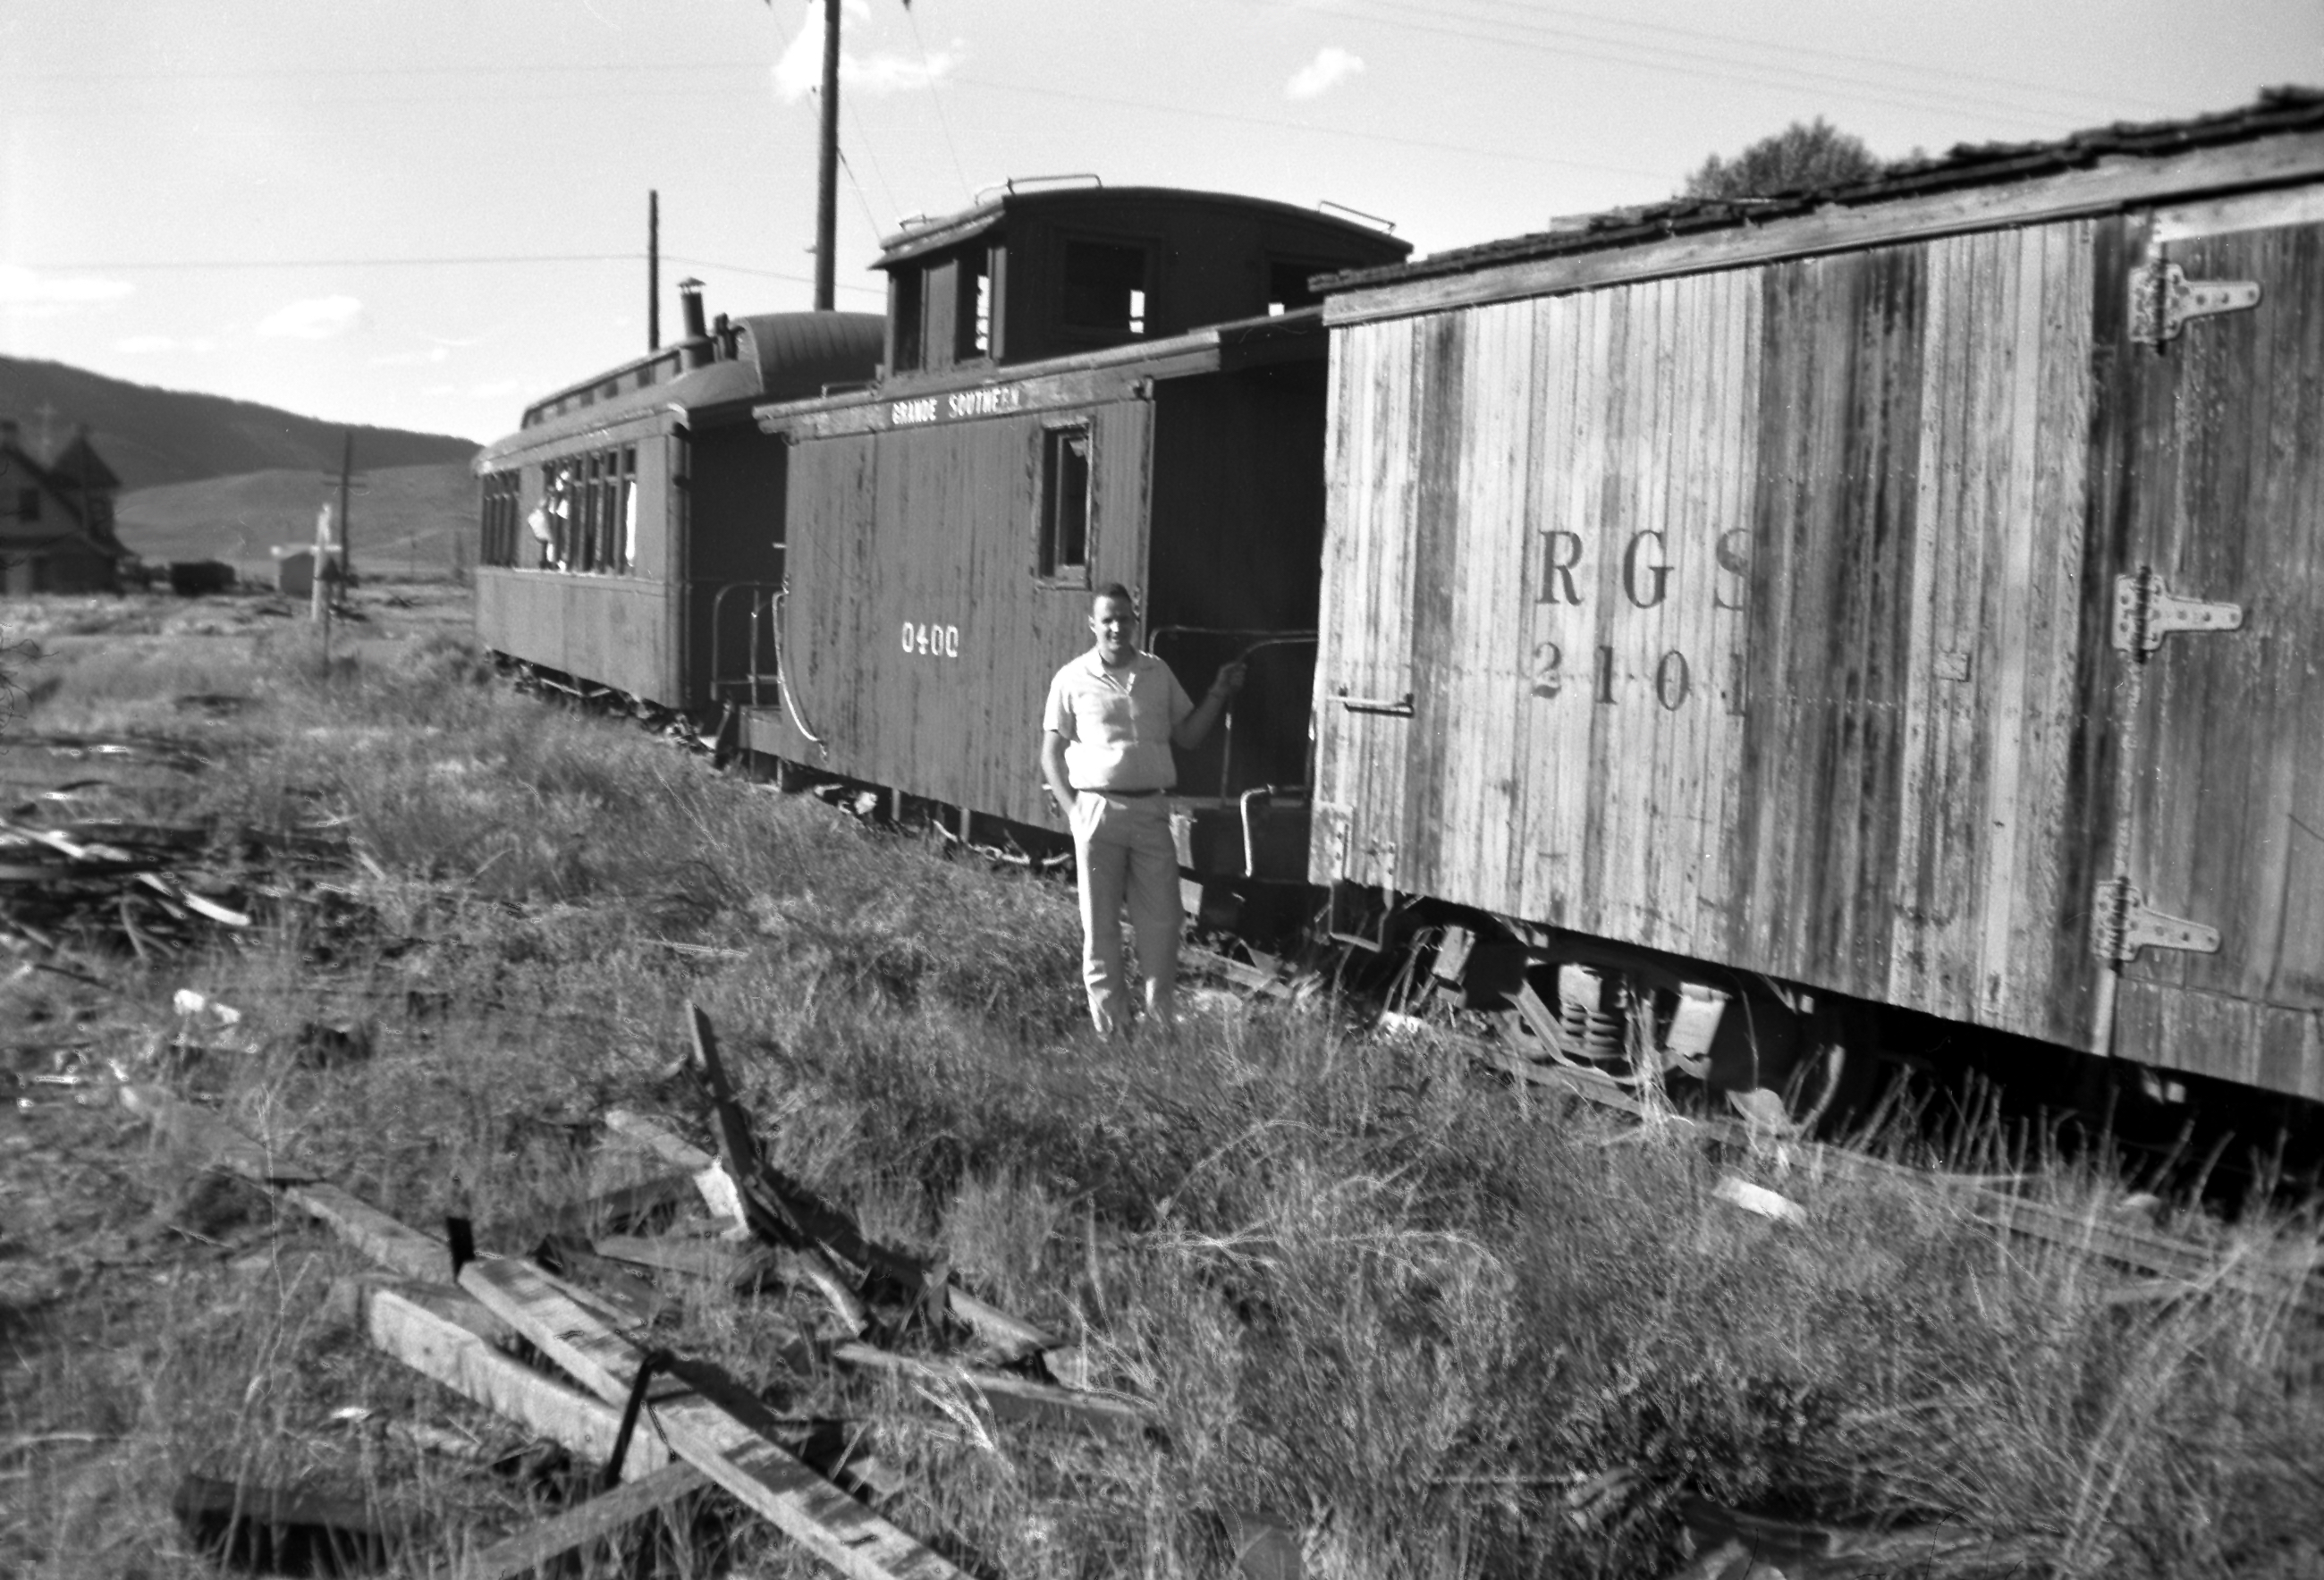 RGS #400 - wooden caboose @ Ridgeway, CO - Jun 1959 - JCH 120 neg - S2495.jpg